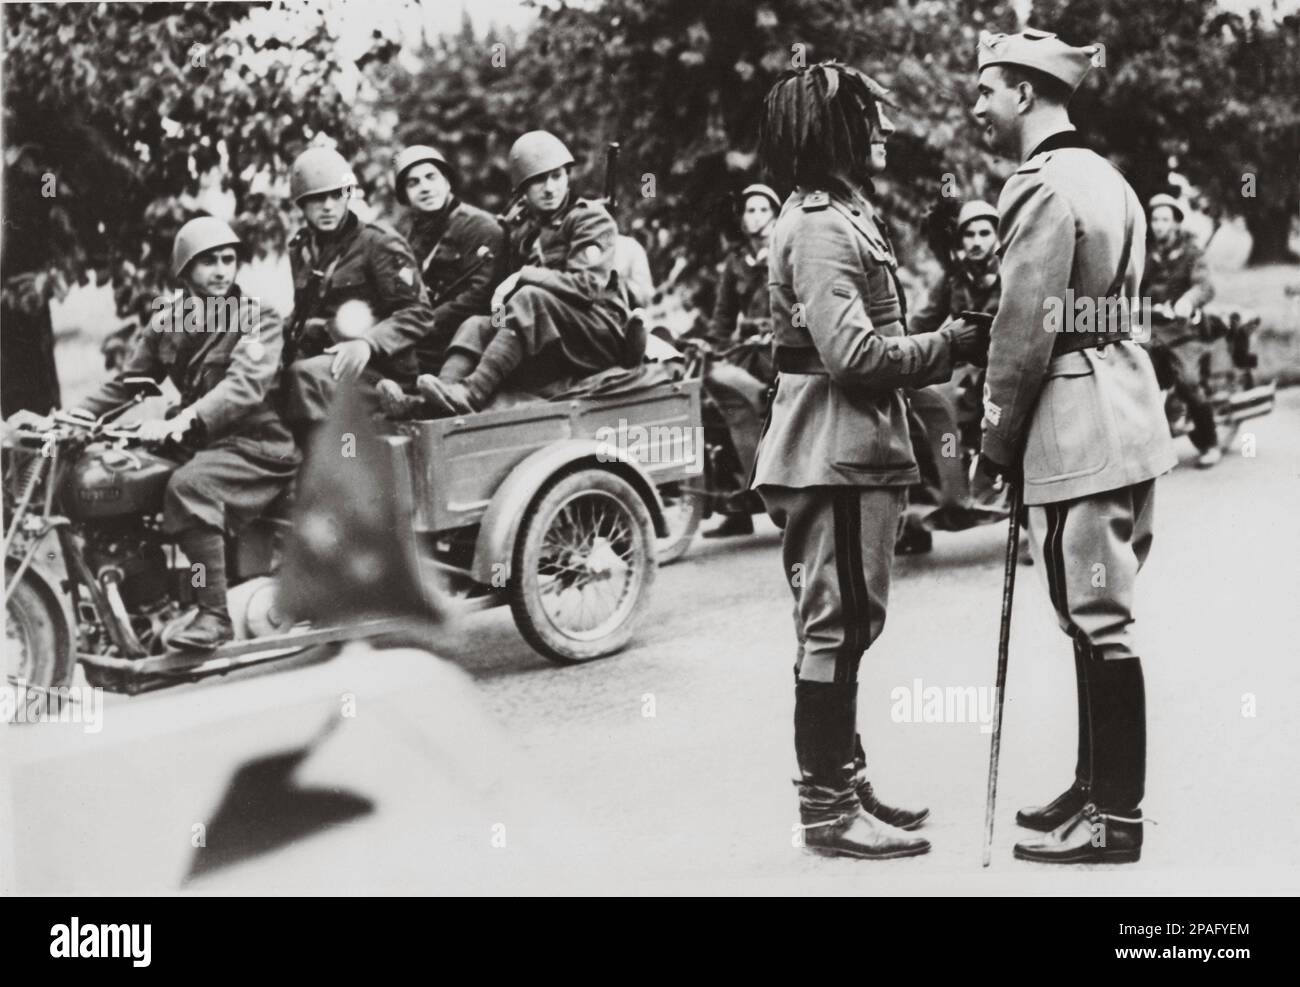 1939 , august , ITALIEN : UMBERTO di SAVOIA Prinz von Piemont ( 1904 - 1983 ) , späterer König von Italien UMBERTO II . im Mai 1945 , Sohn von König VITTORIO EMANUELE III . und Königin ELENA ( del Montenegro ) . Auf diesem Foto mit dem Comandante von Bersaglieri während der Monoevres - ITALIA - CASA SAVOIA - REALI - Nobiltà ITALIANA - SAVOY - ADEL - KÖNIGE - GESCHICHTE - FOTOSTORICHE - Könige - nobili - Nobiltà - principe reale ereditario - Militäruniform - Divisa uniforme militare - Porträt - Rituto - BERSAGLIERE --- ARCHIVIO GBB Stockfoto